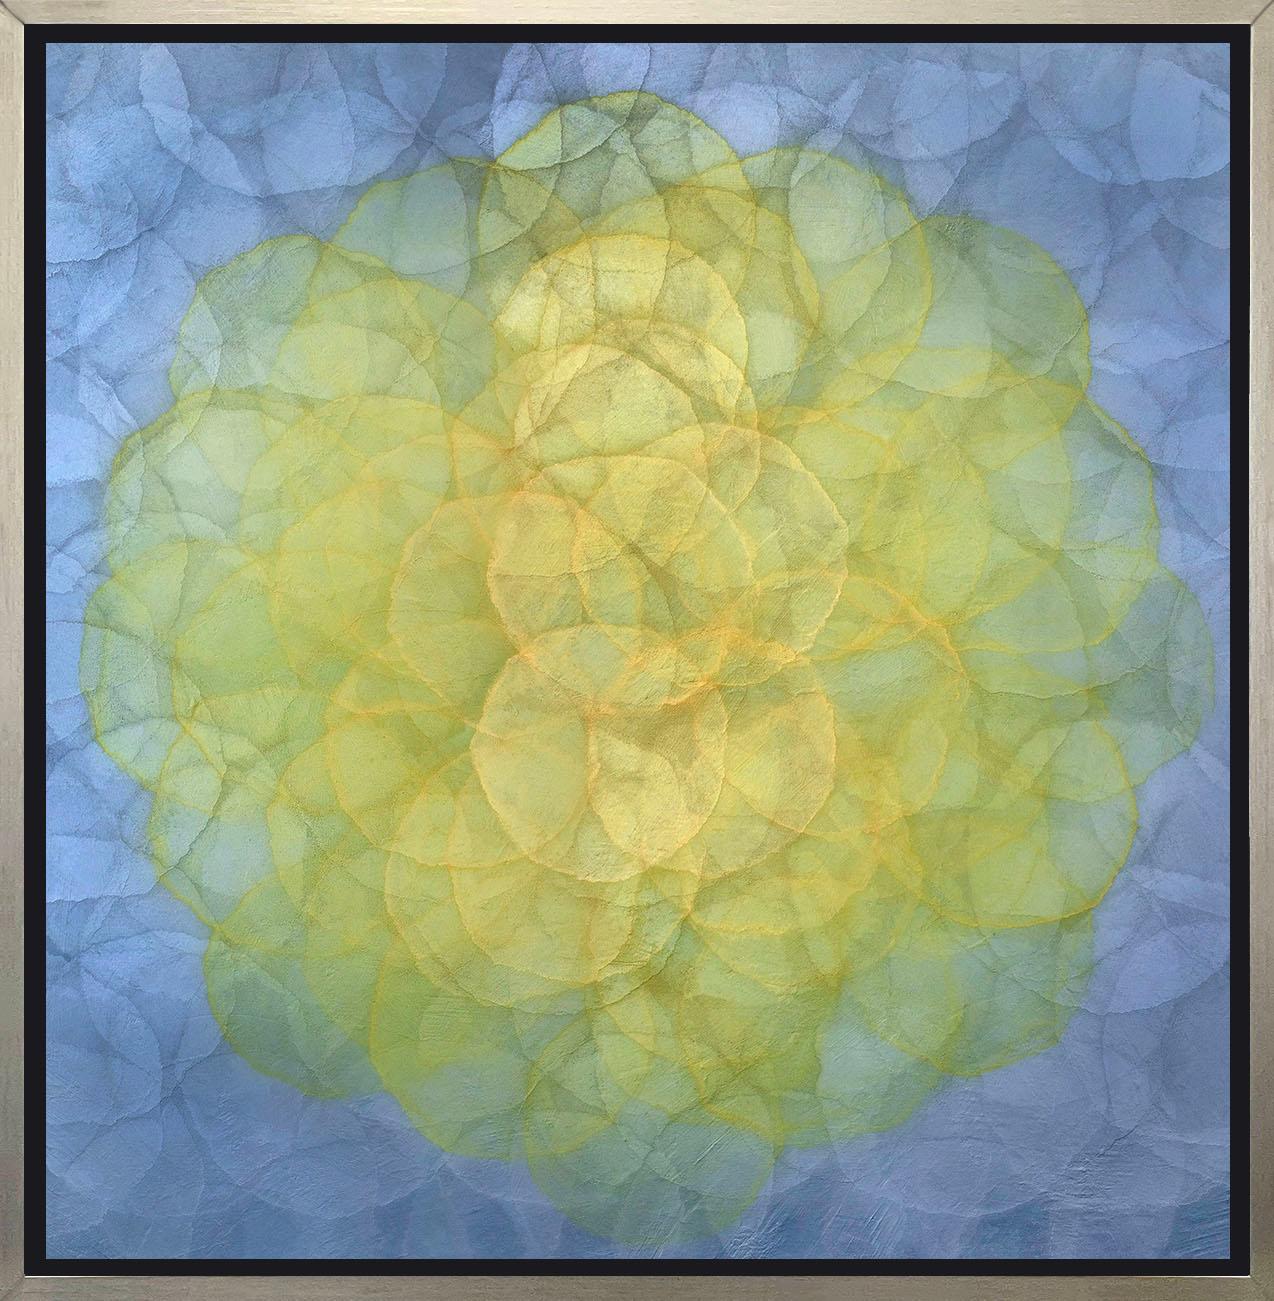 Abstract Print Roger Mudre - "Triteleia - Giclée à tirage limité encadrée, 48" x 48".